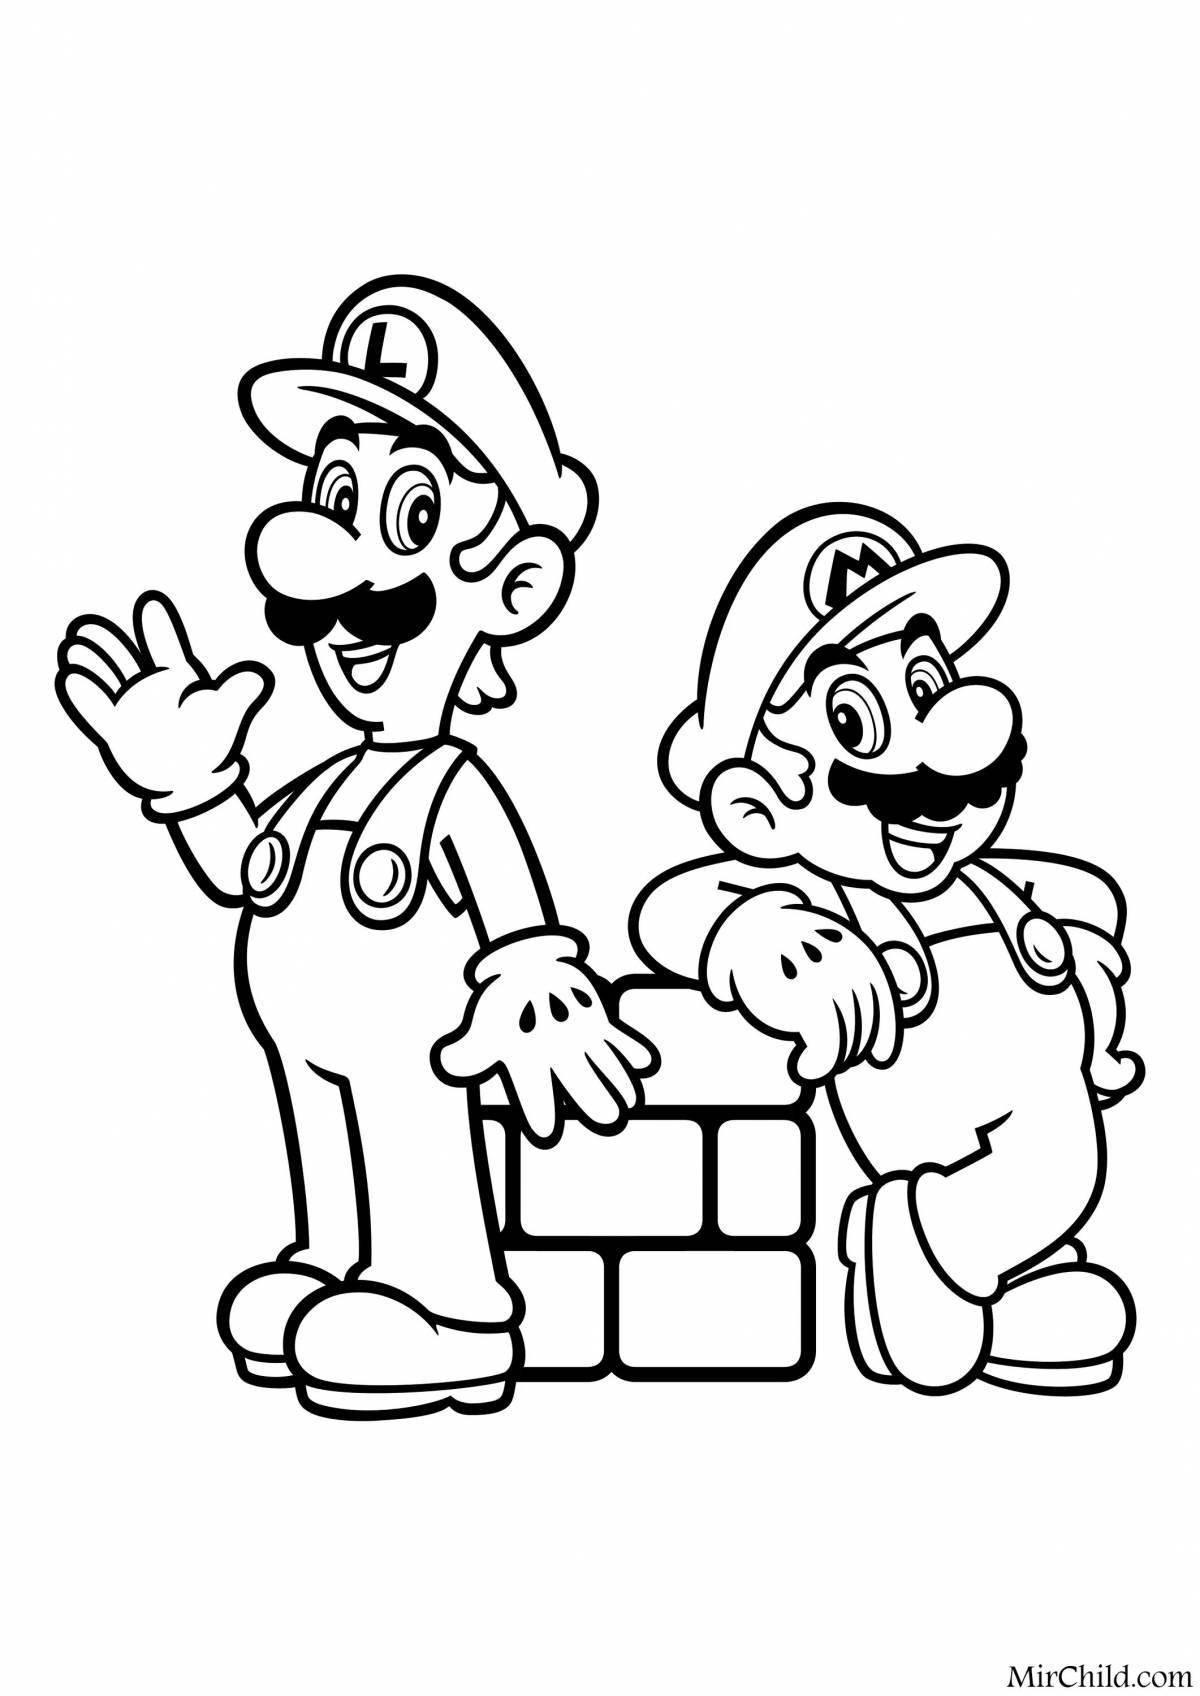 Luigi and mario coloring page